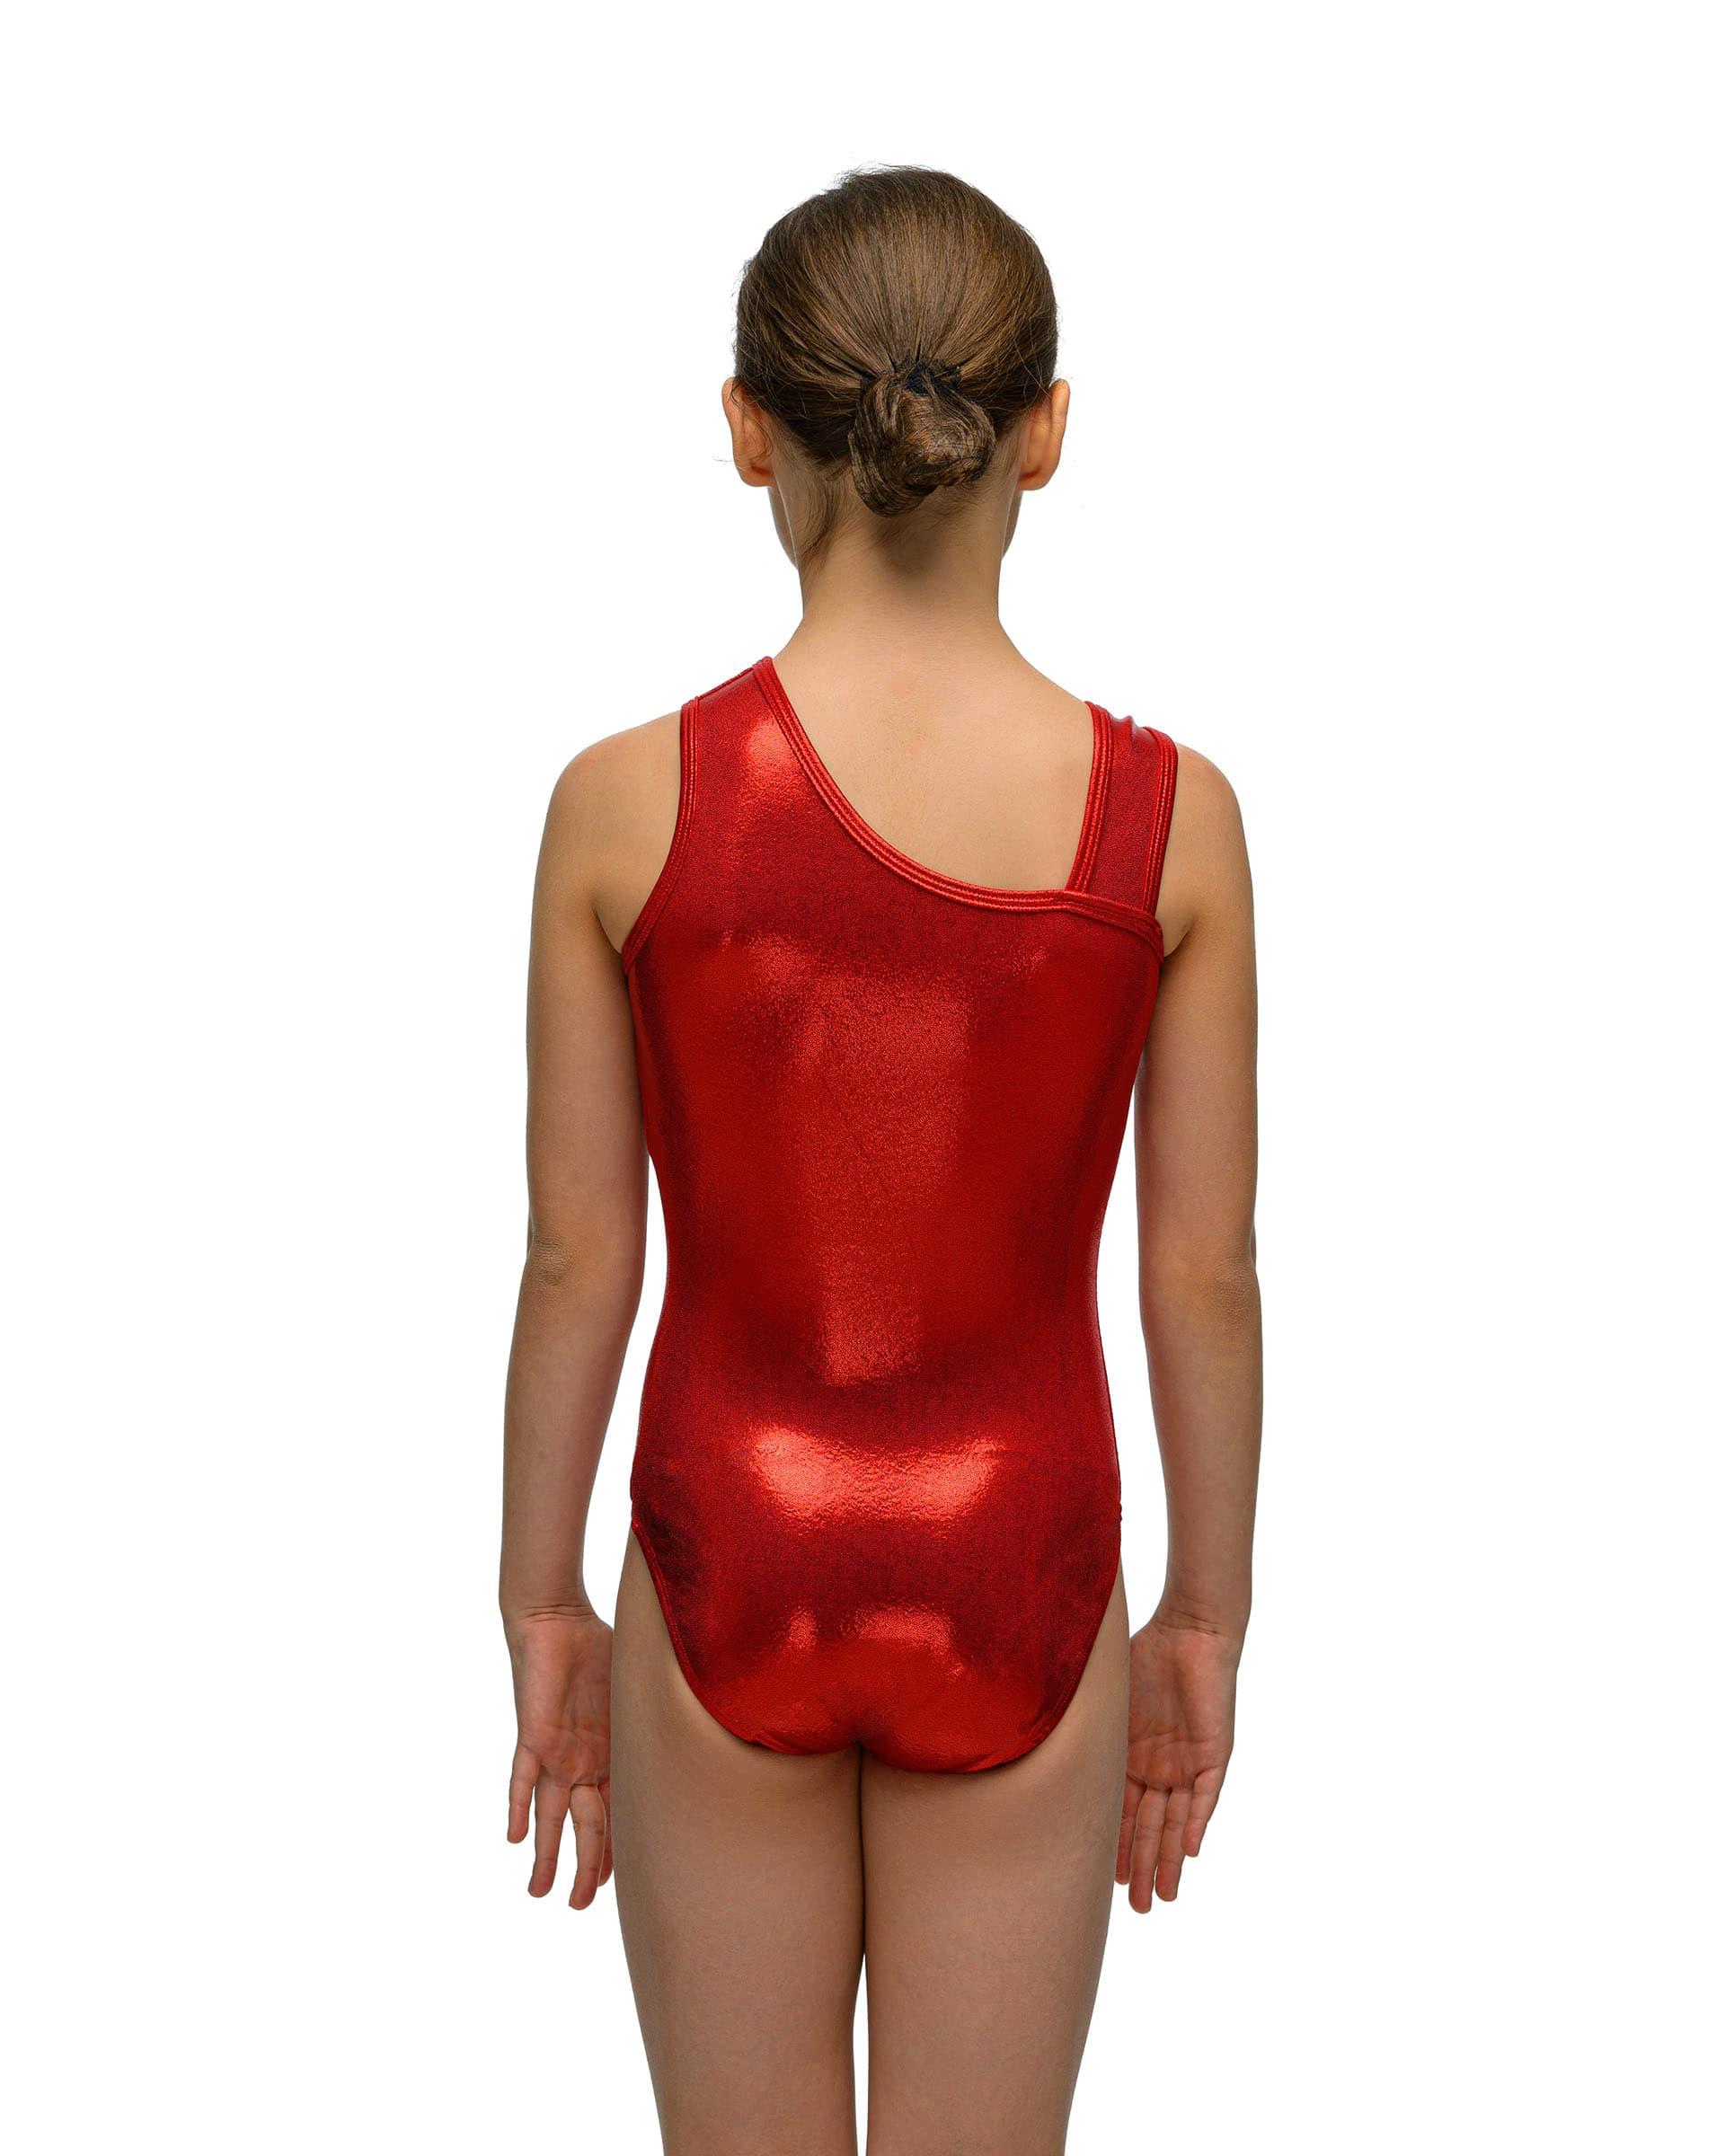 Купальник женский для спортивной гимнастики Alpha Factor 5406 красный с серебристым рисунком без рукава